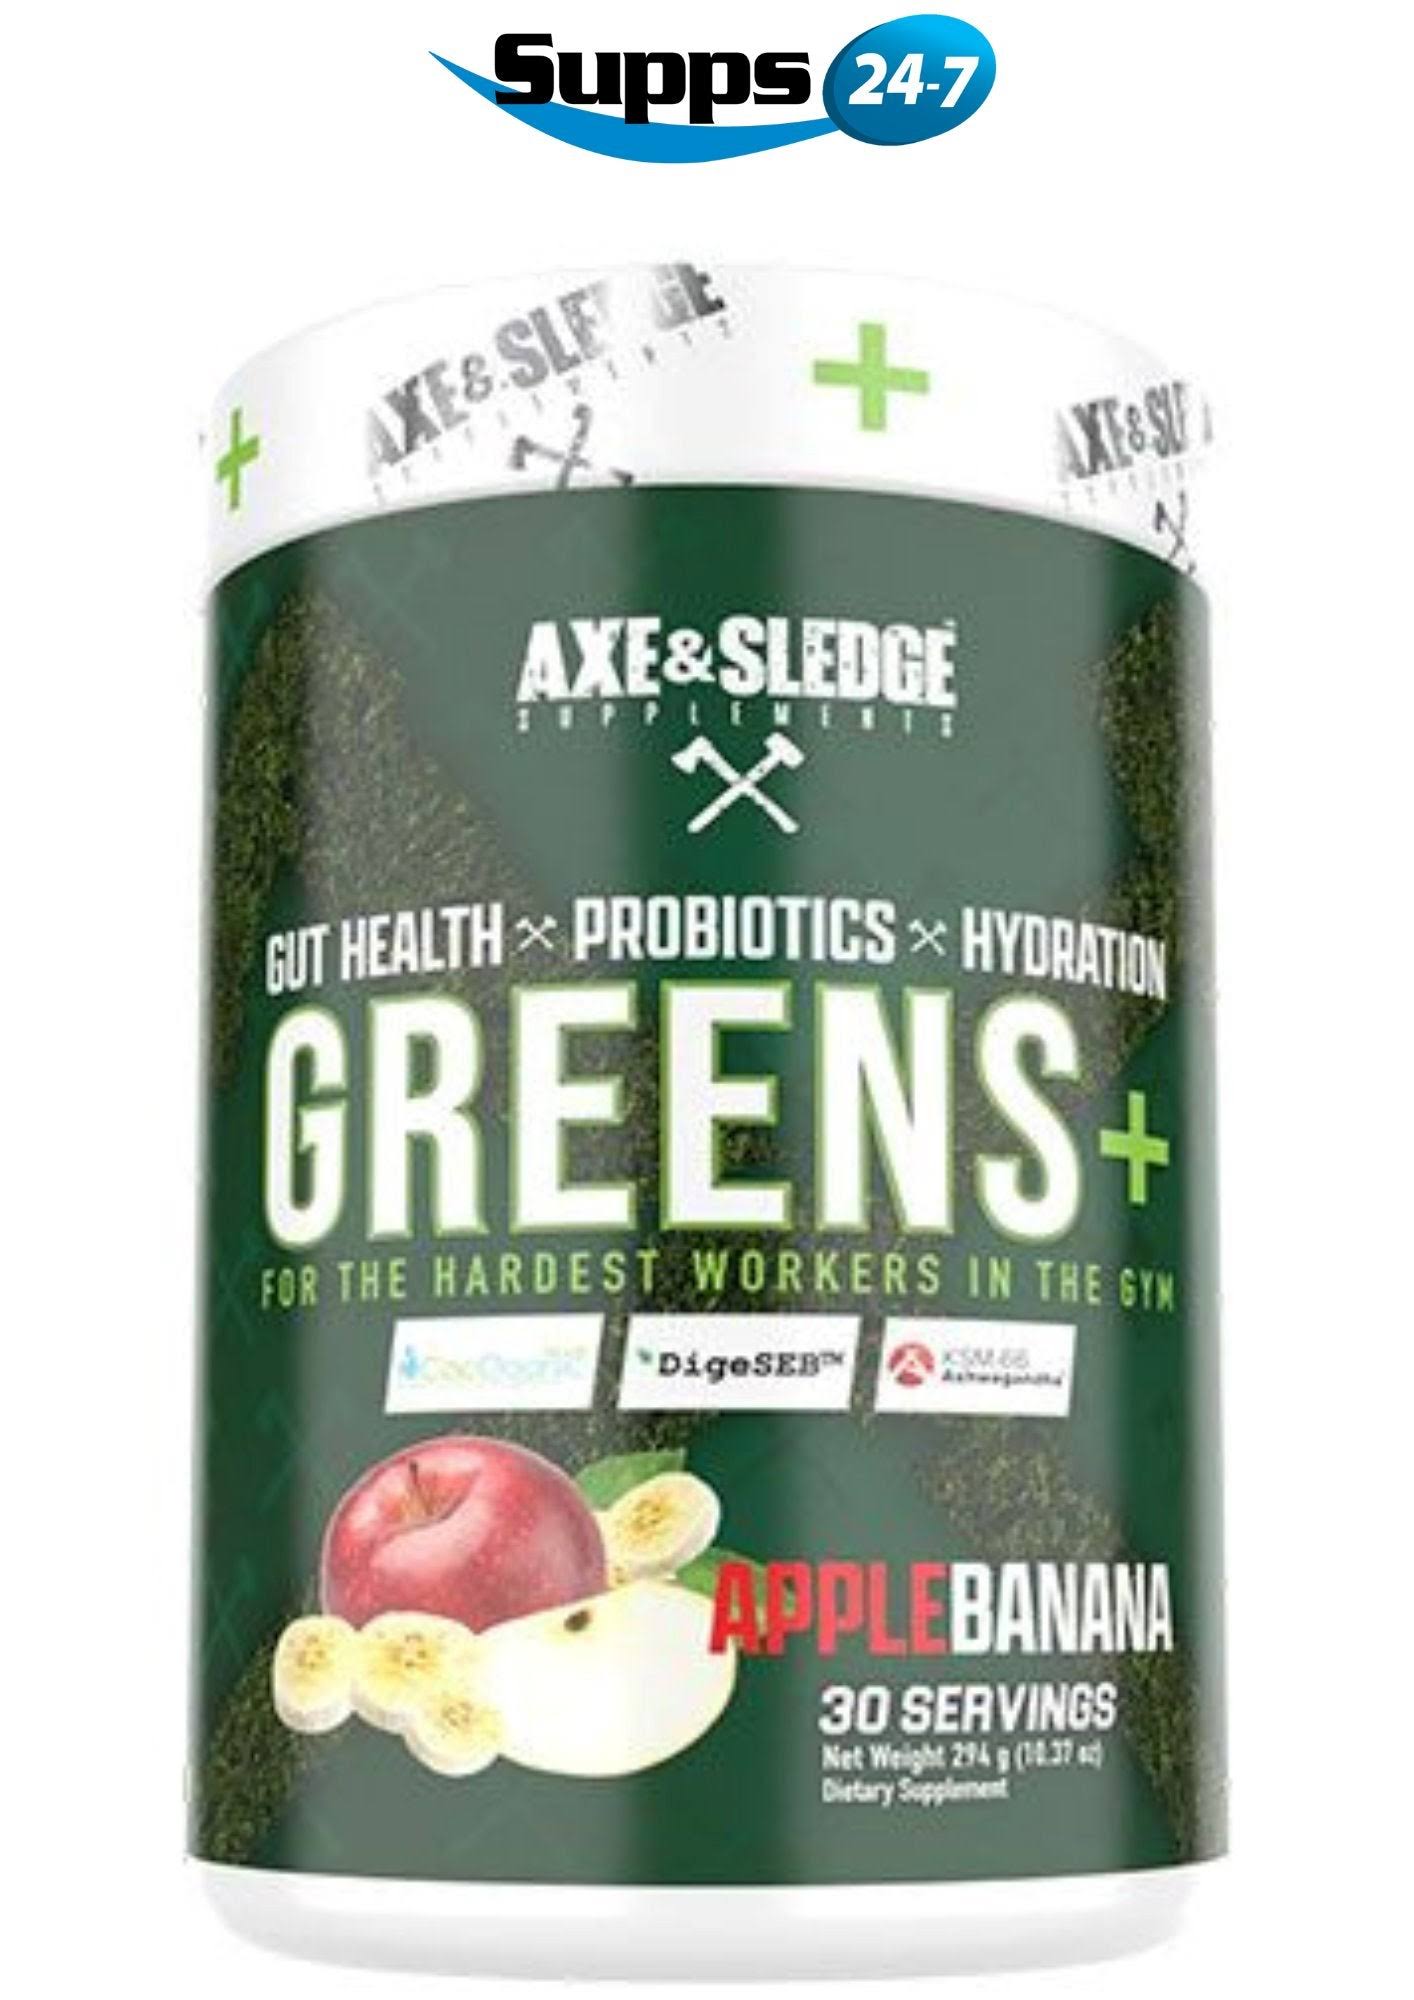 Axe & Sledge Greens+ - Apple Banana